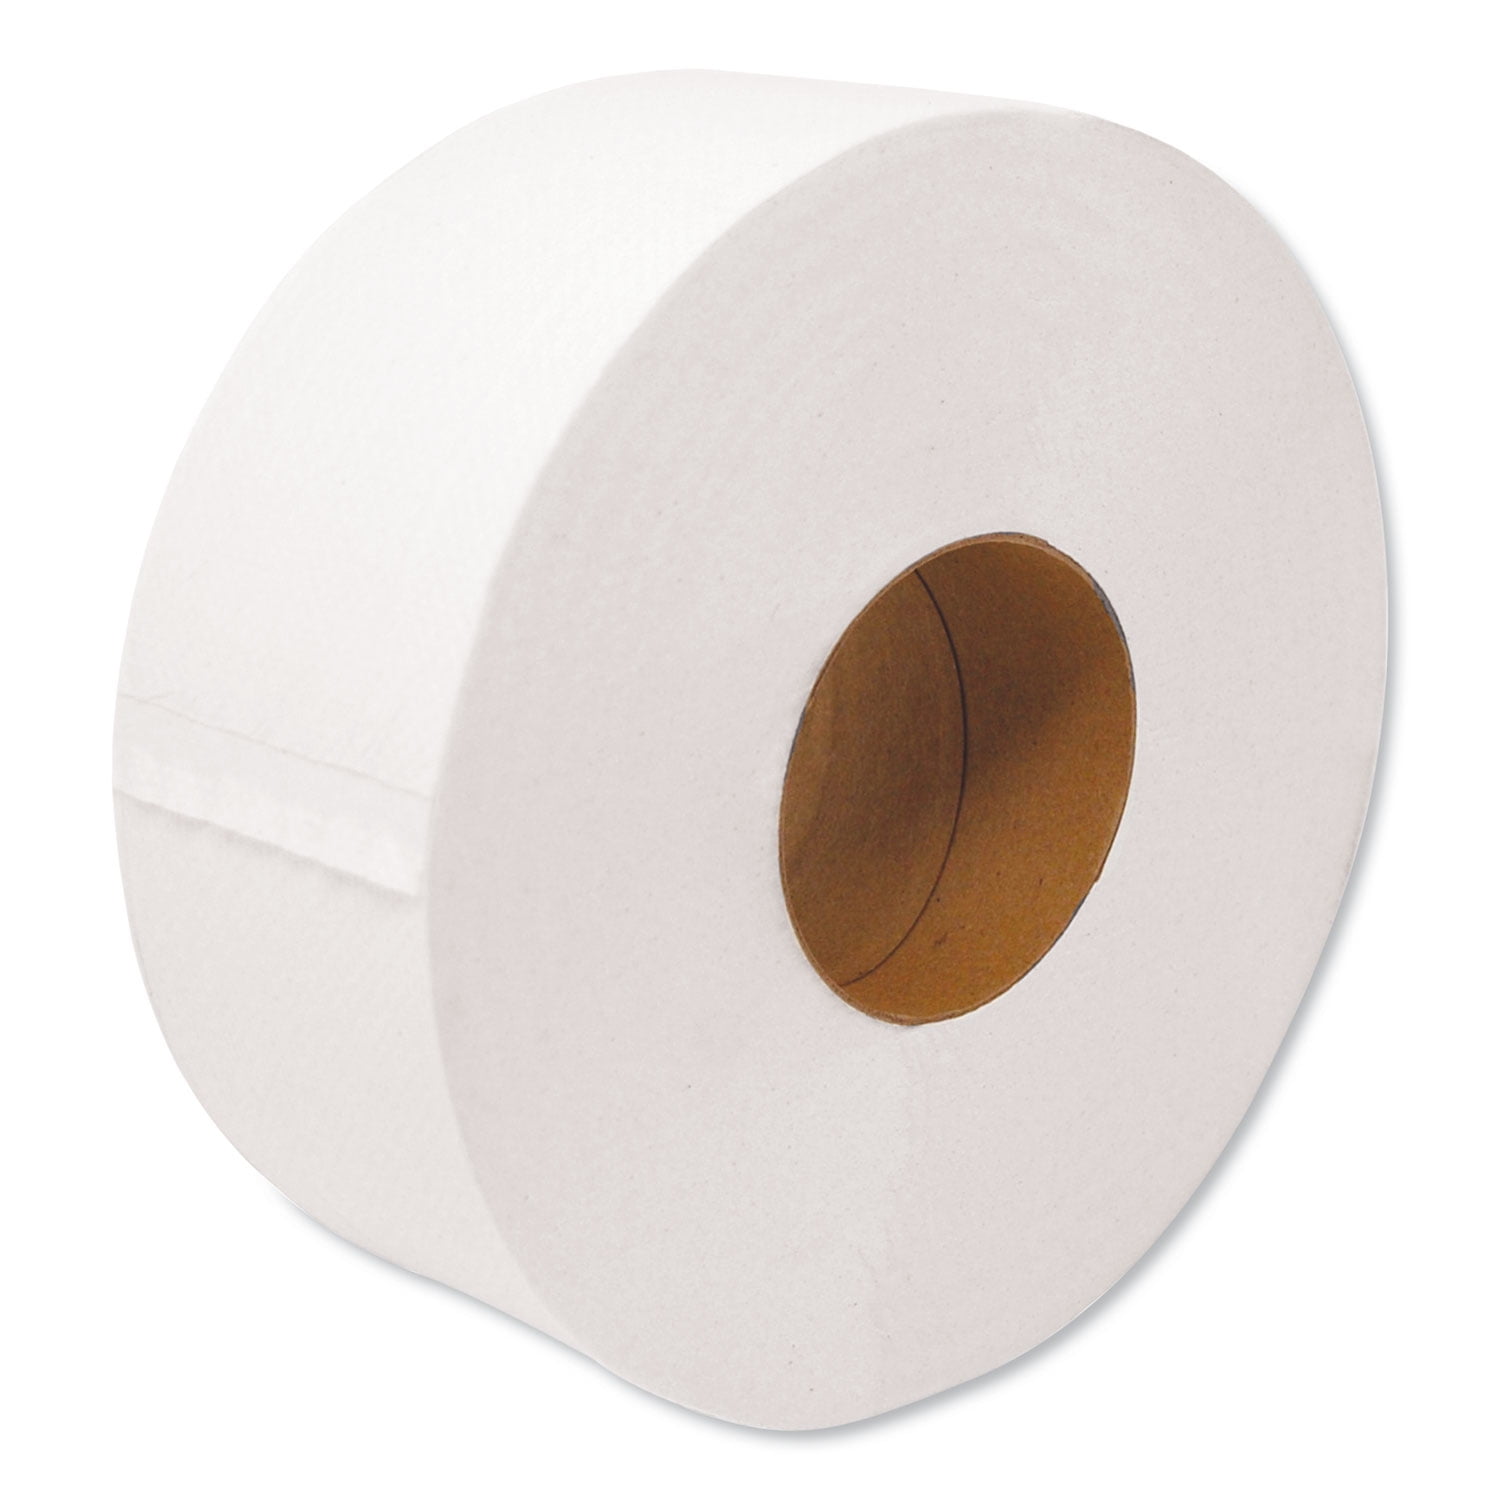 GEN Jumbo Jr. 2-Ply Toilet Paper Rolls, 12 Rolls (GENULTRA9B)